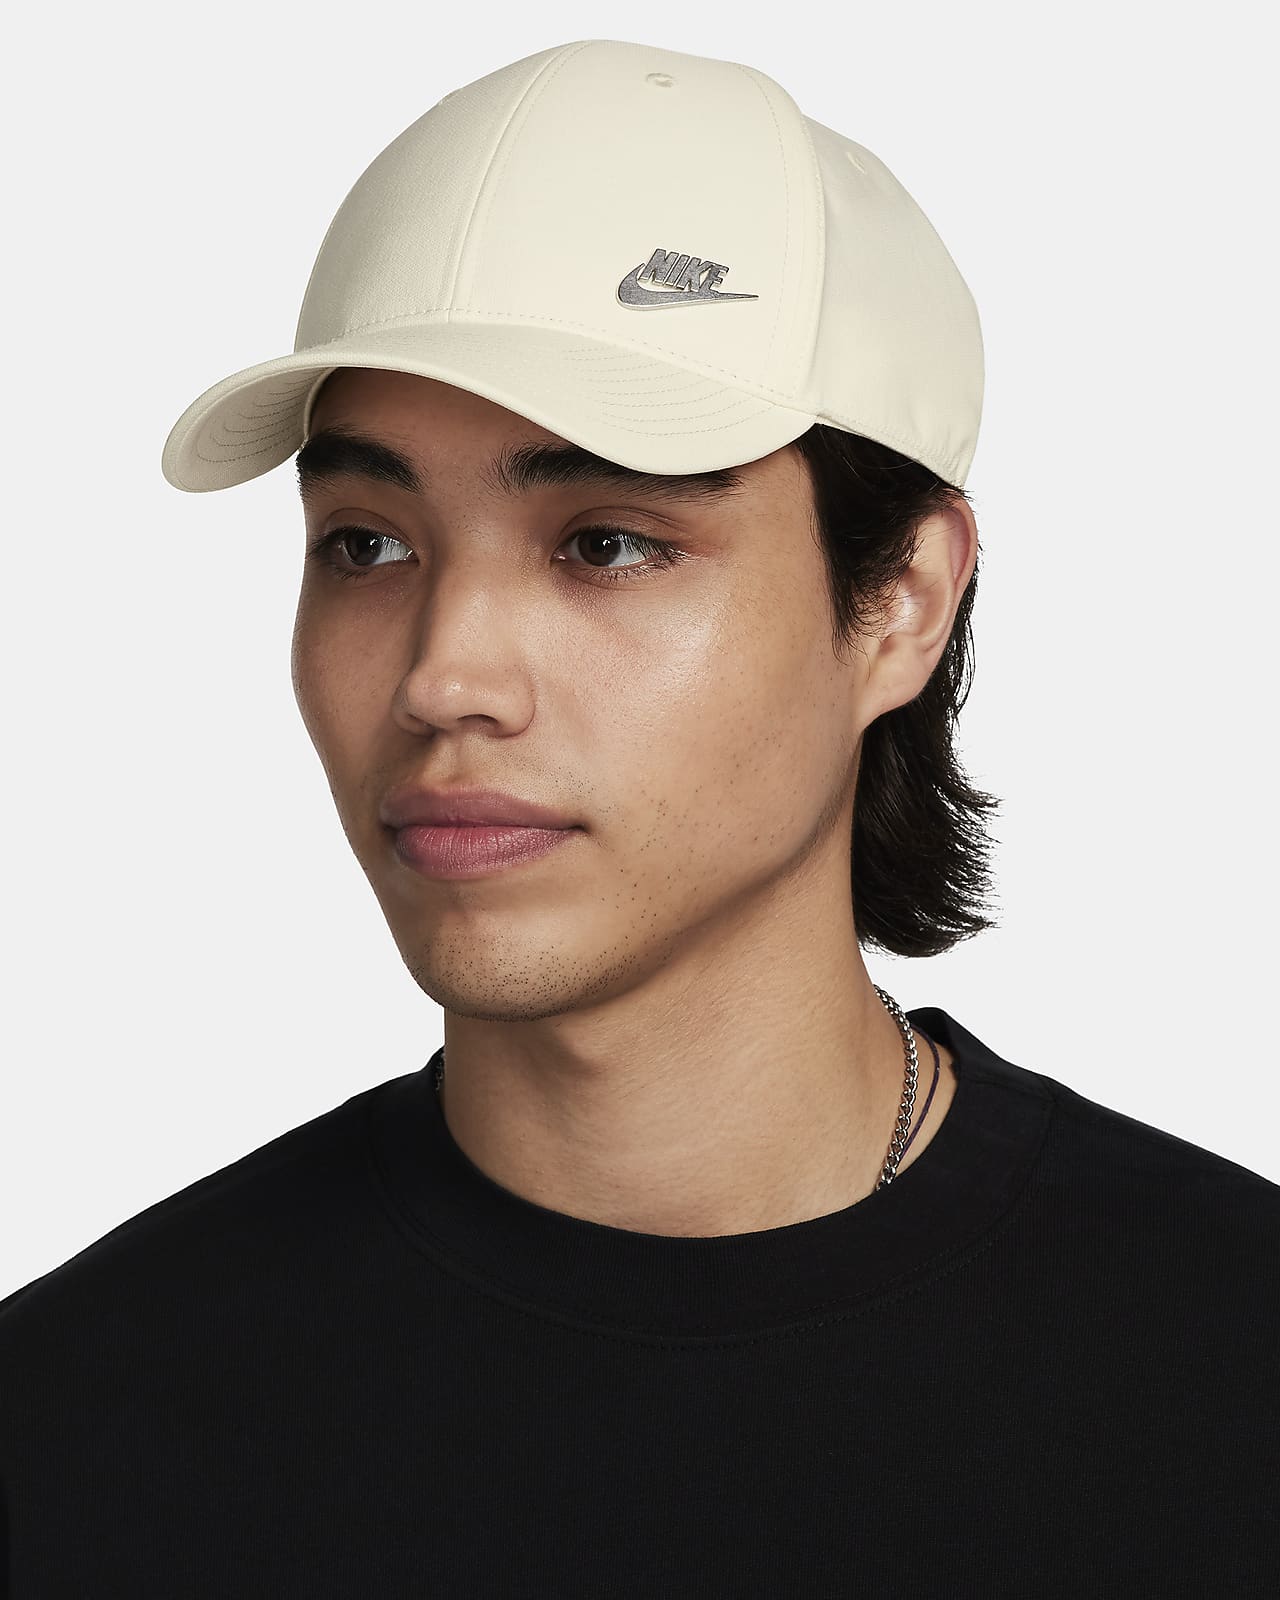 Nike Dri-FIT Club 金屬標誌硬帽